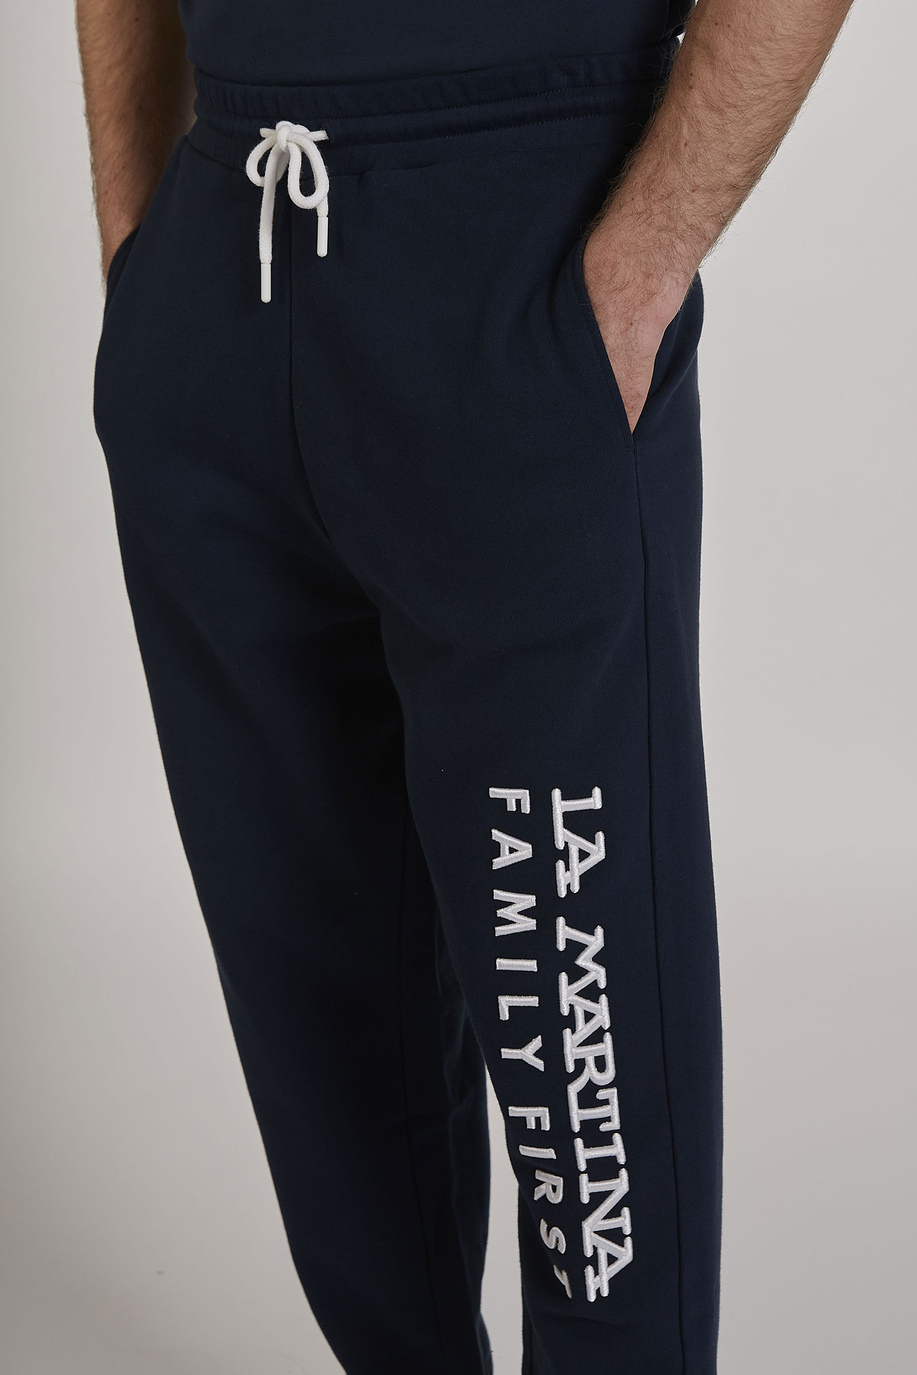 Pantalone da uomo modello jogger in cotone elasticizzato oversize